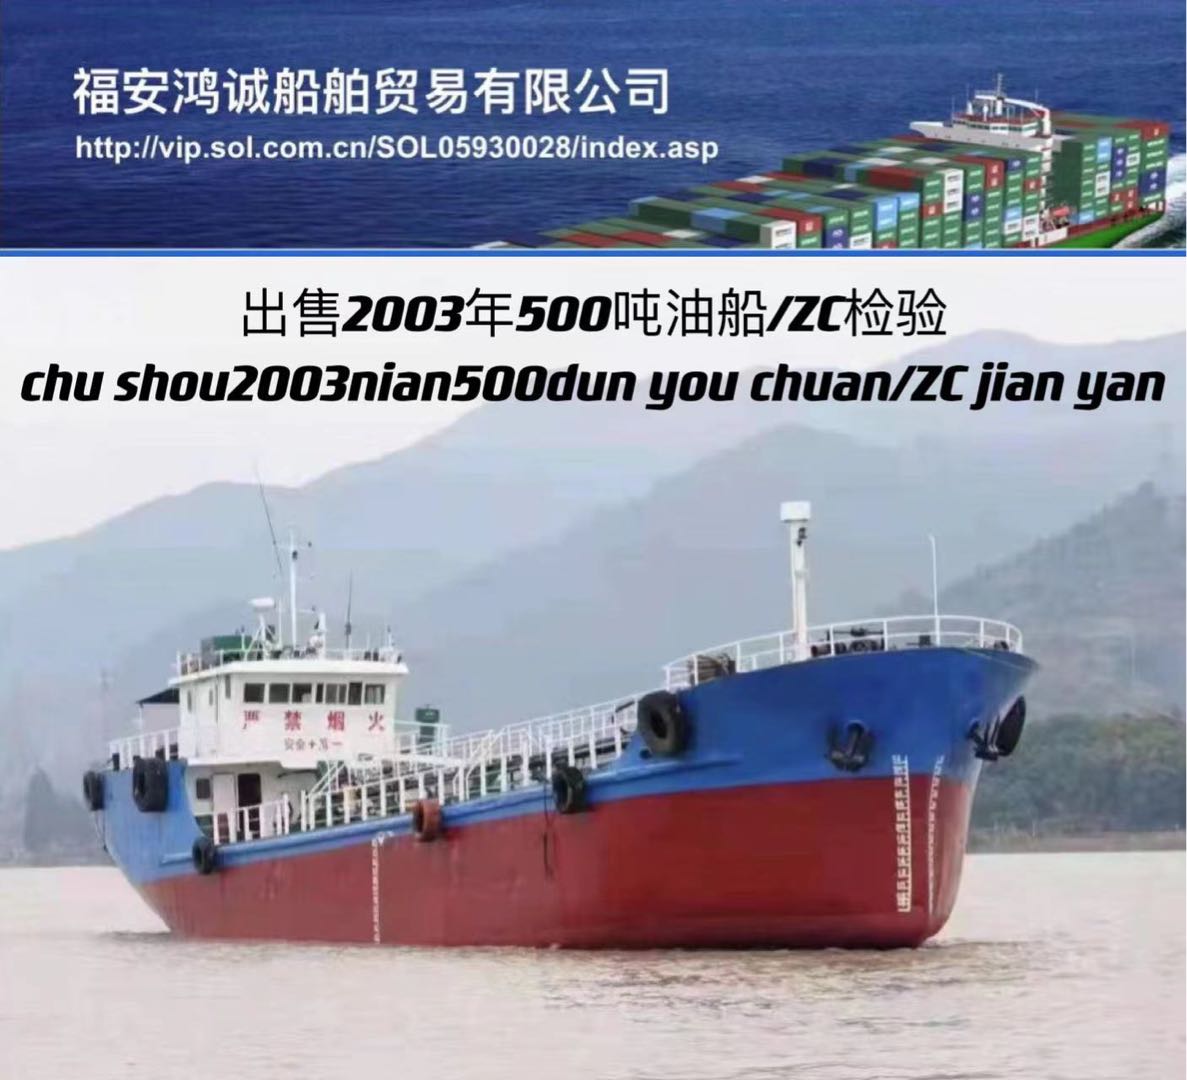 低价出售500吨油船